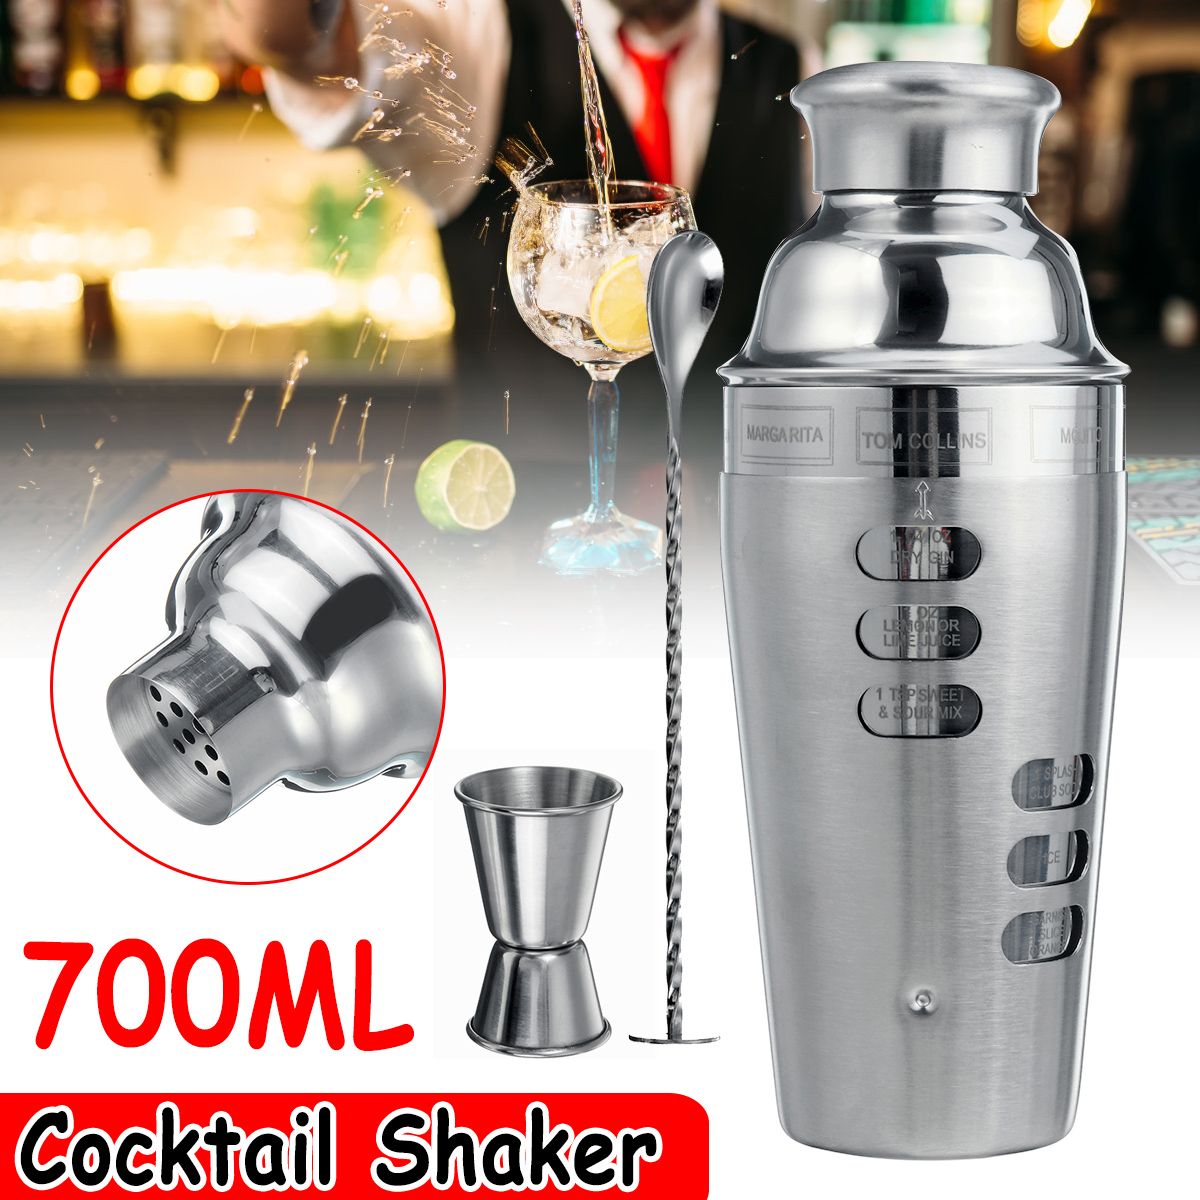 Stainless-Steel-700ML-Cocktail-Shaker-Set-Maker-Mixer-Martini-Bar-Bartender-Kit-1629102